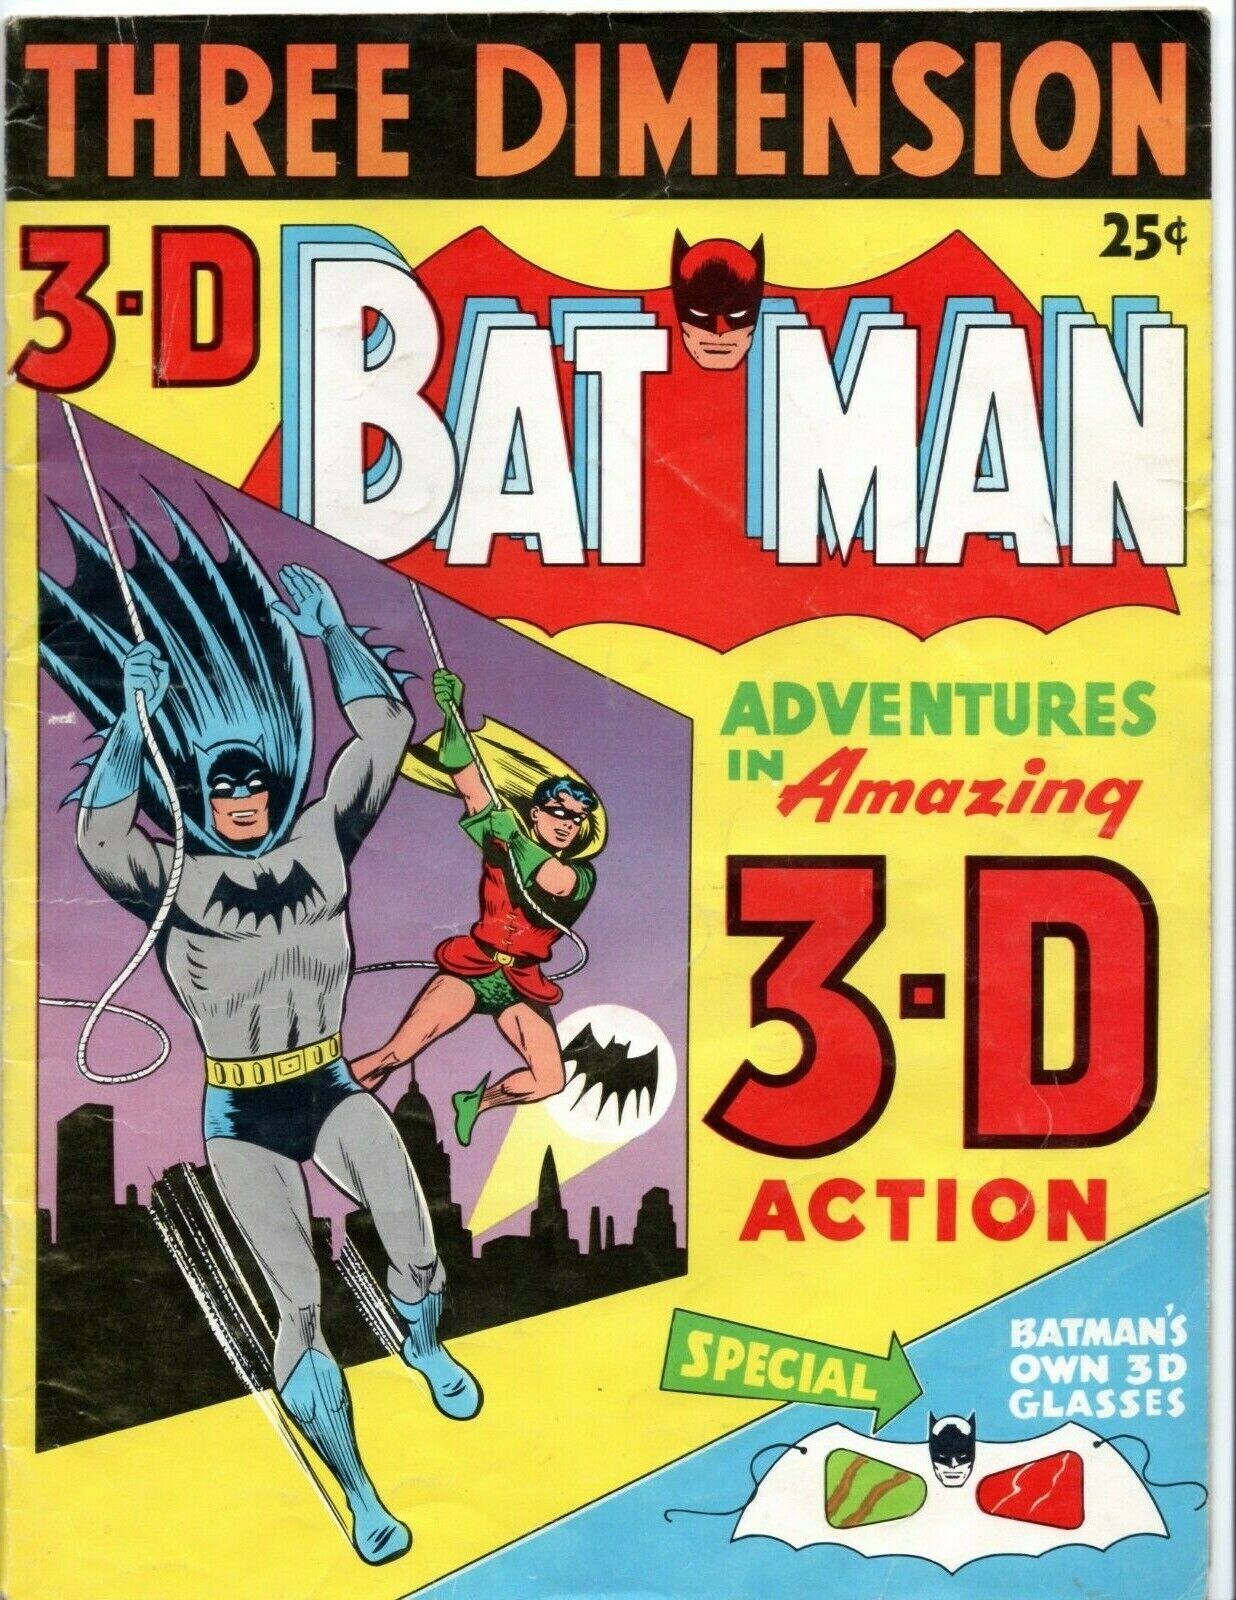 Three Dimension 3-D Bat Man Adventures 1953 VG+ No Glasses